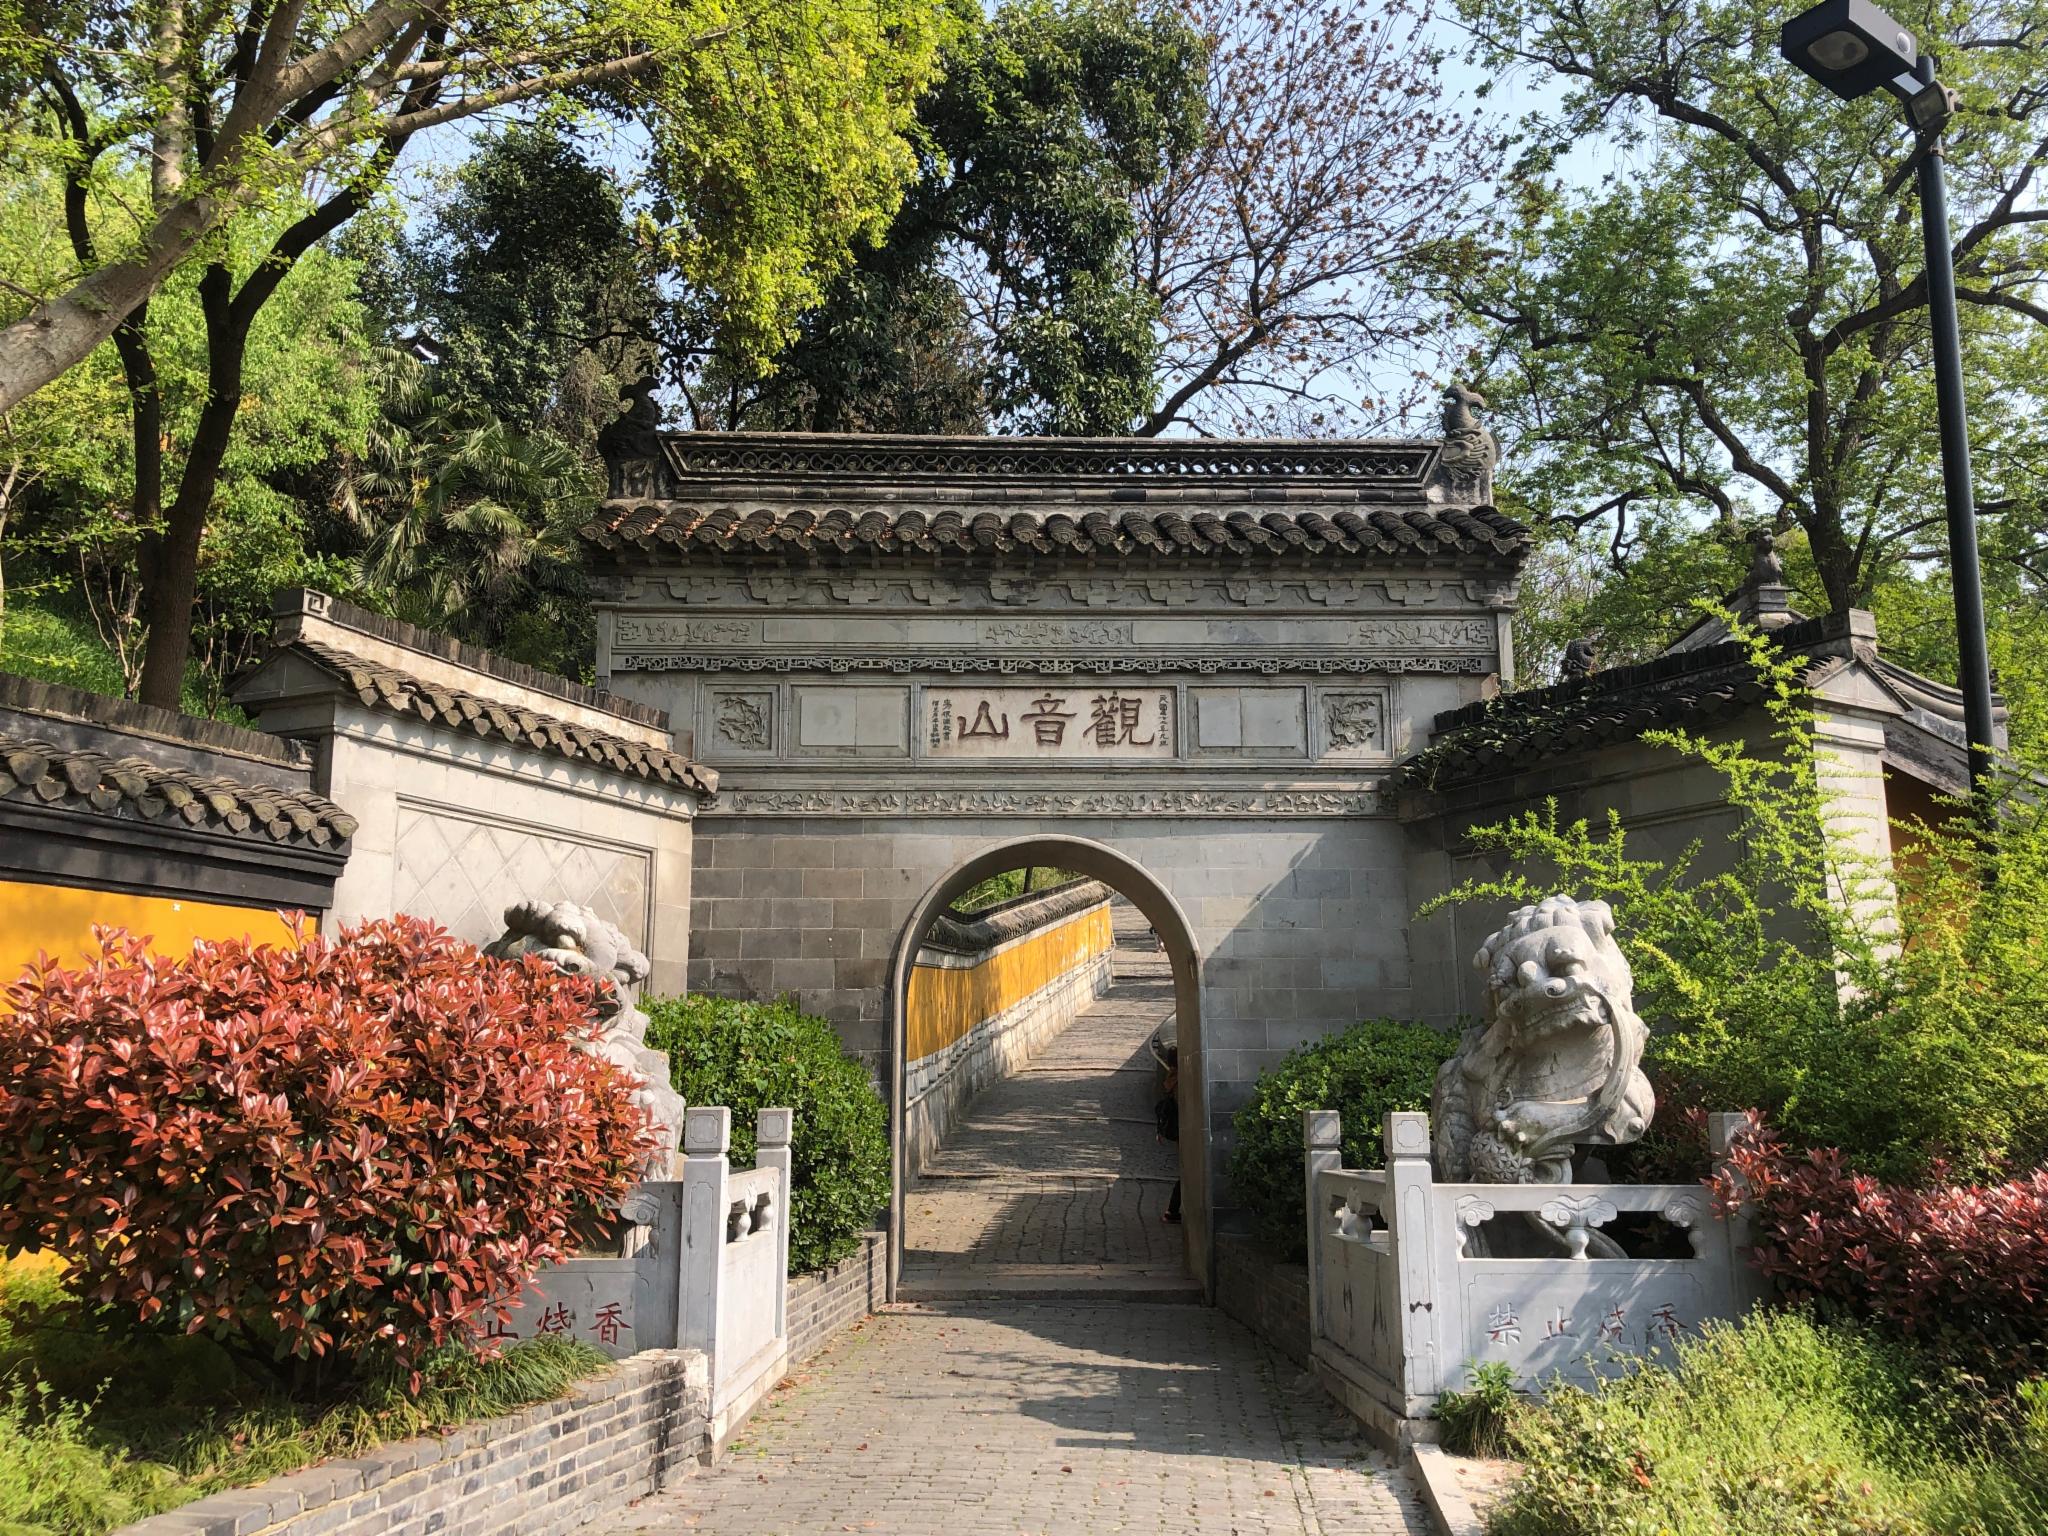 历史悠久风光秀丽的扬州有不少名胜古迹譬如瘦西湖何园个园东关街等等